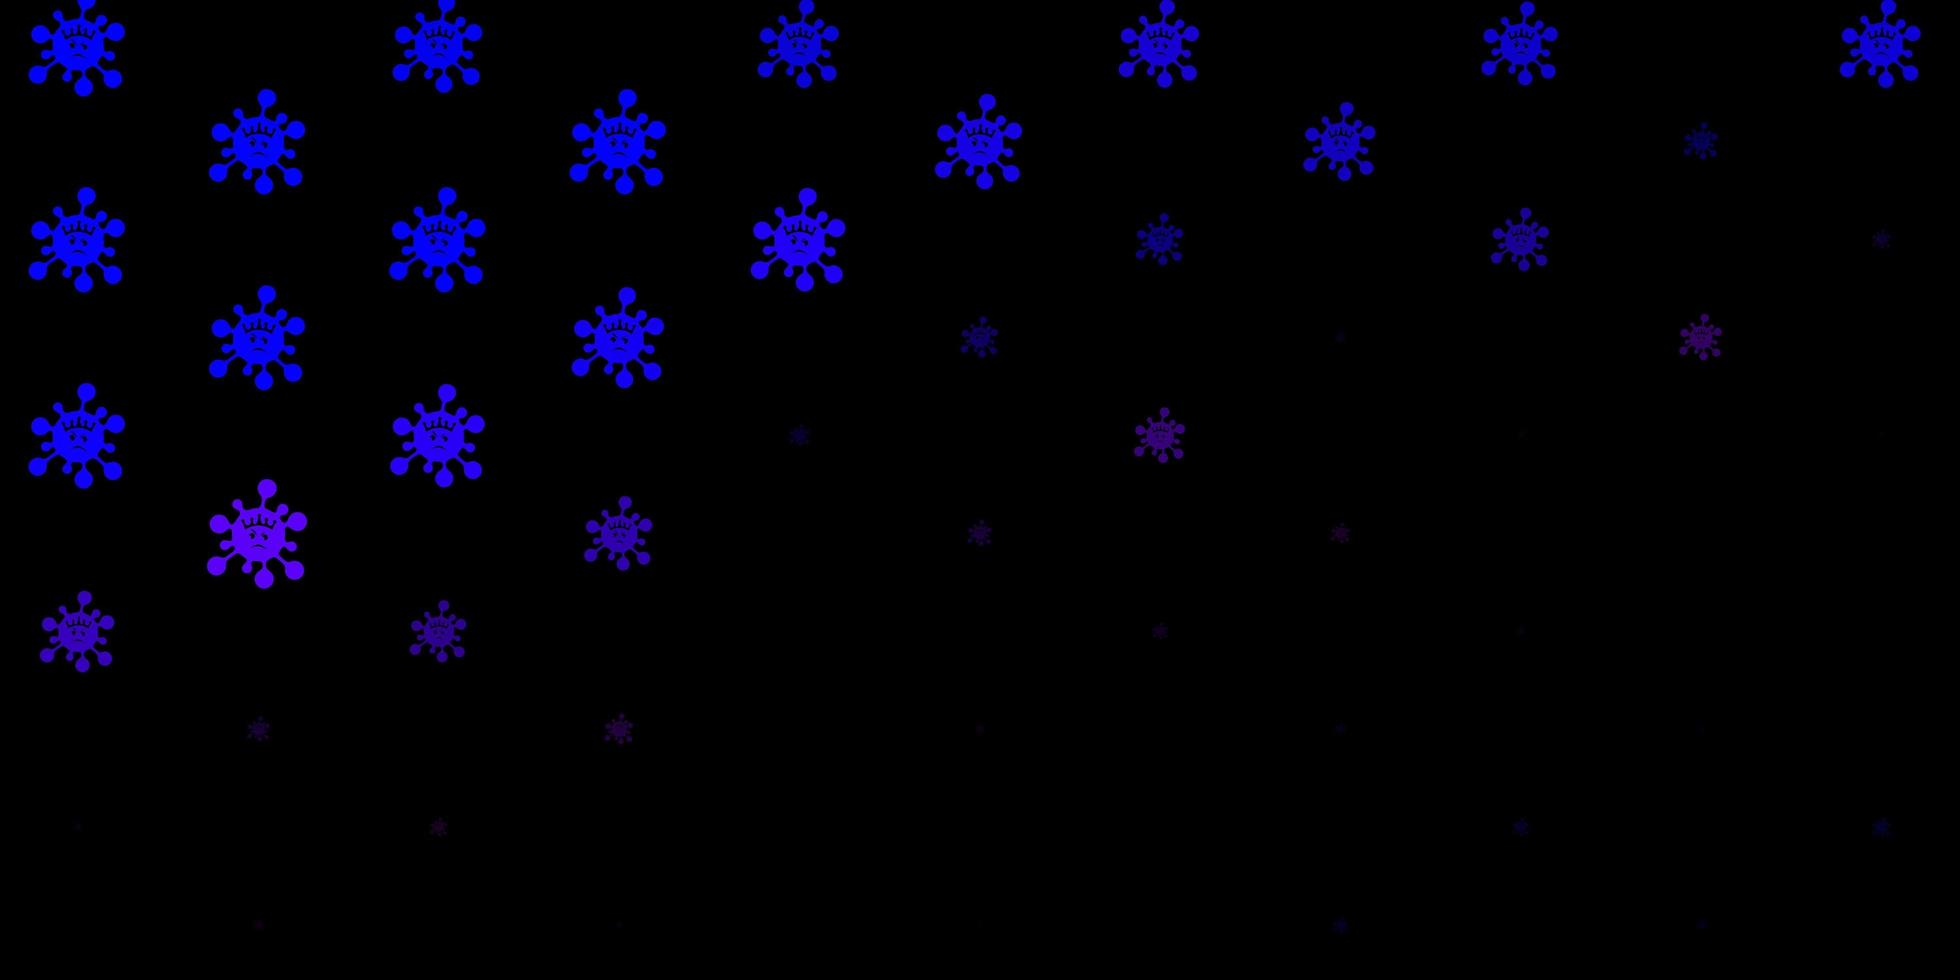 padrão de vetor rosa escuro, azul com elementos de coronavírus.